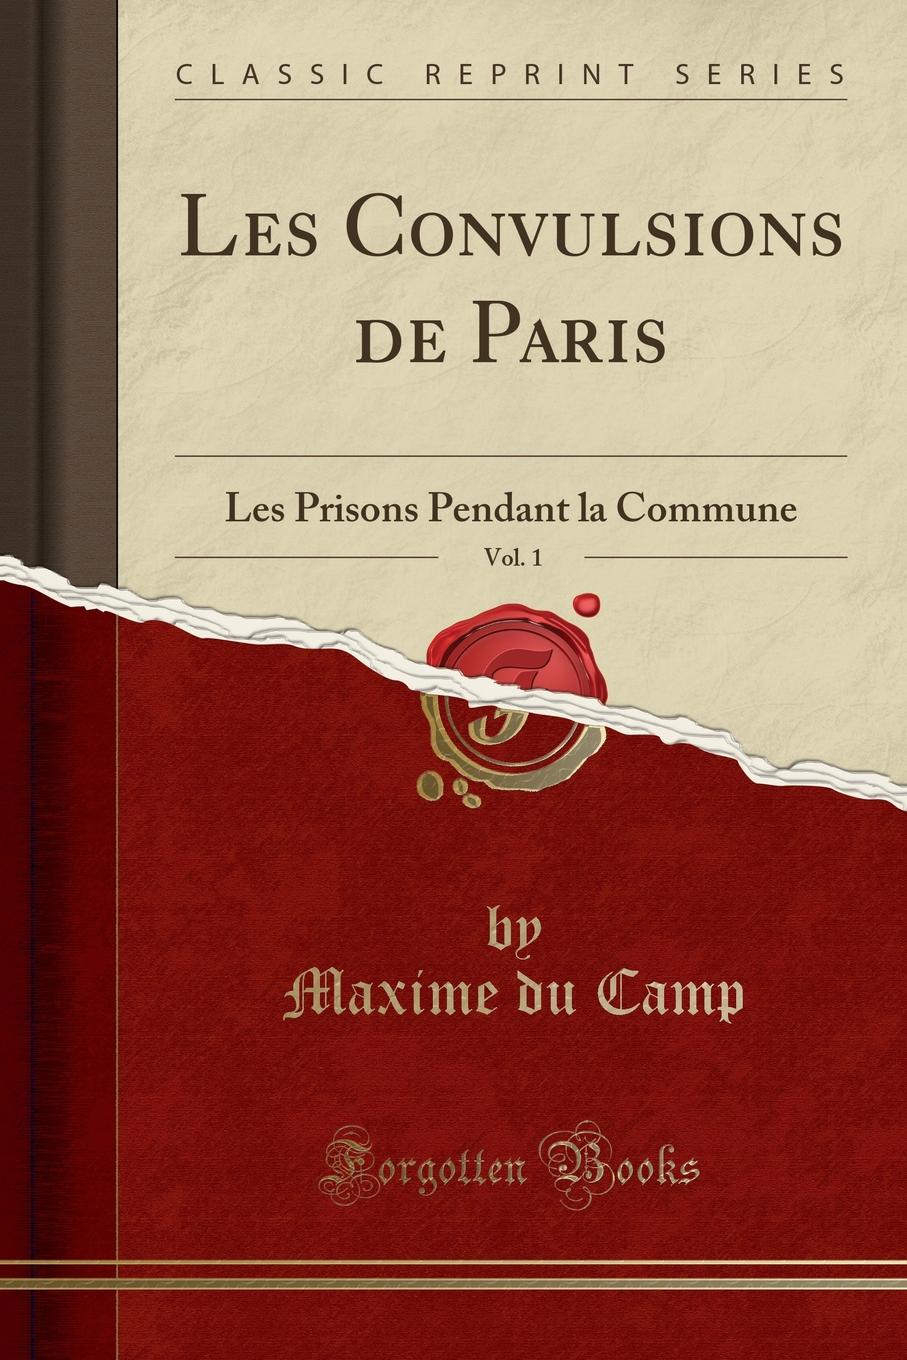 Les Convulsions de Paris, Vol. 1. Les Prisons Pendant la Commune (Classic Reprint)